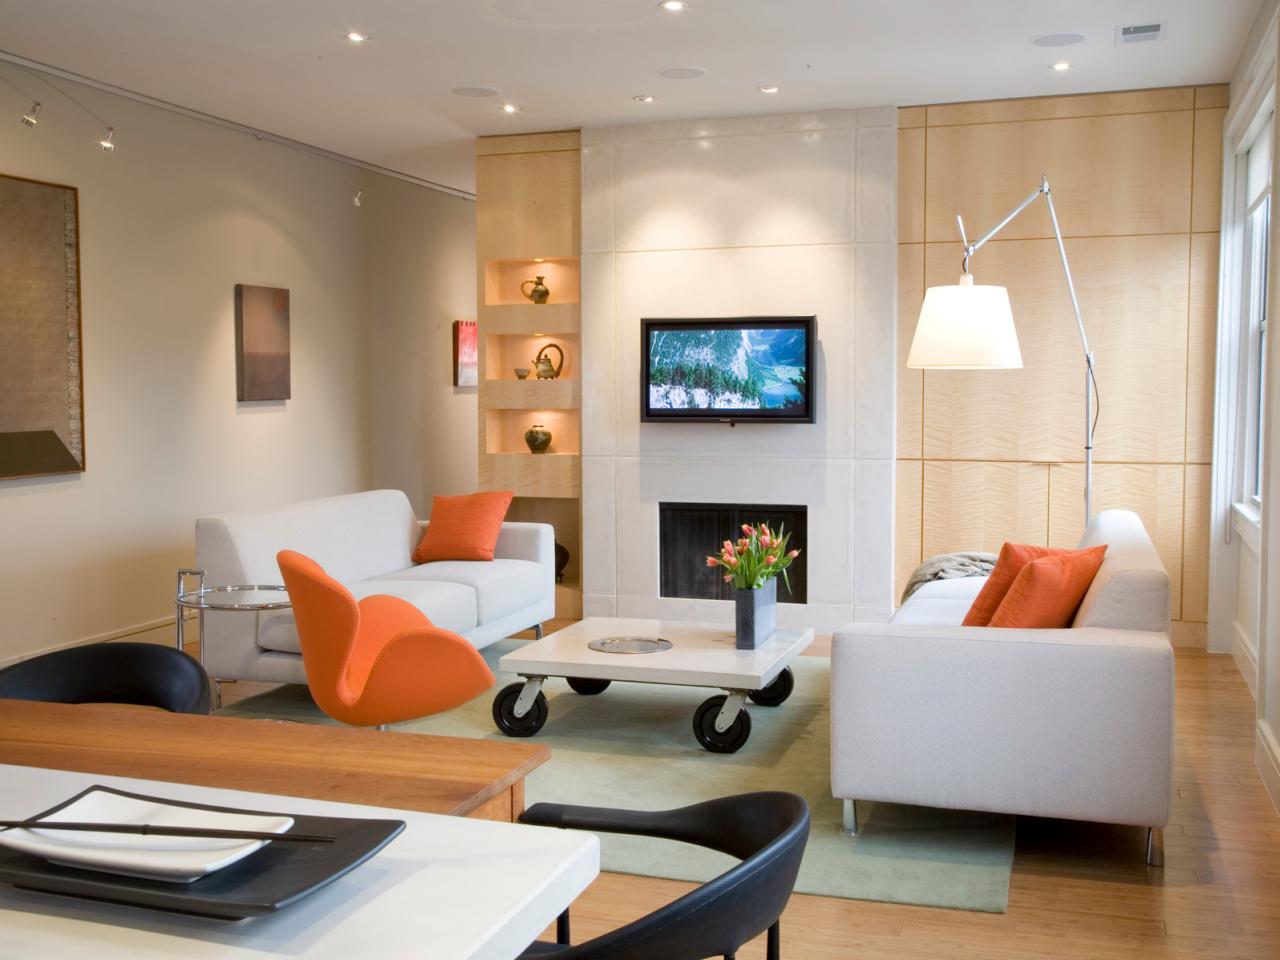 Living Room Lighting Tips | HGTV